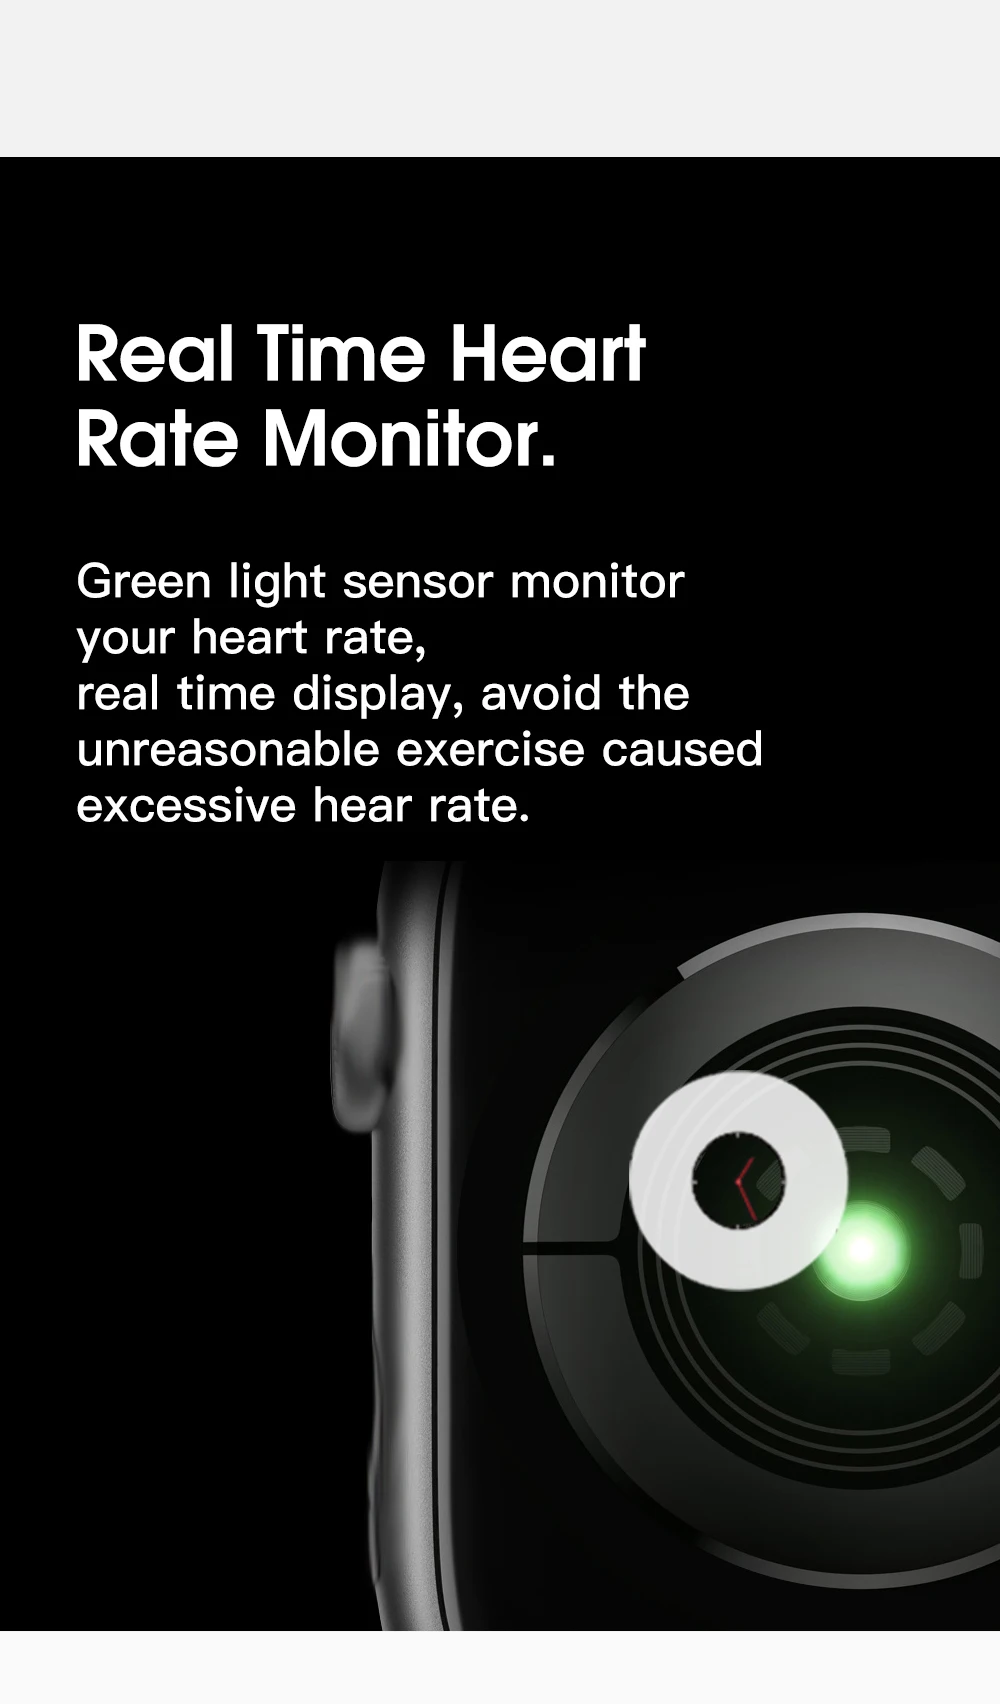 Смарт-часы серии 4 Смарт-часы чехол для Apple IPhone Android смарт-телефон монитор сердечного ритма педометр(красная кнопка) IWO8/W54